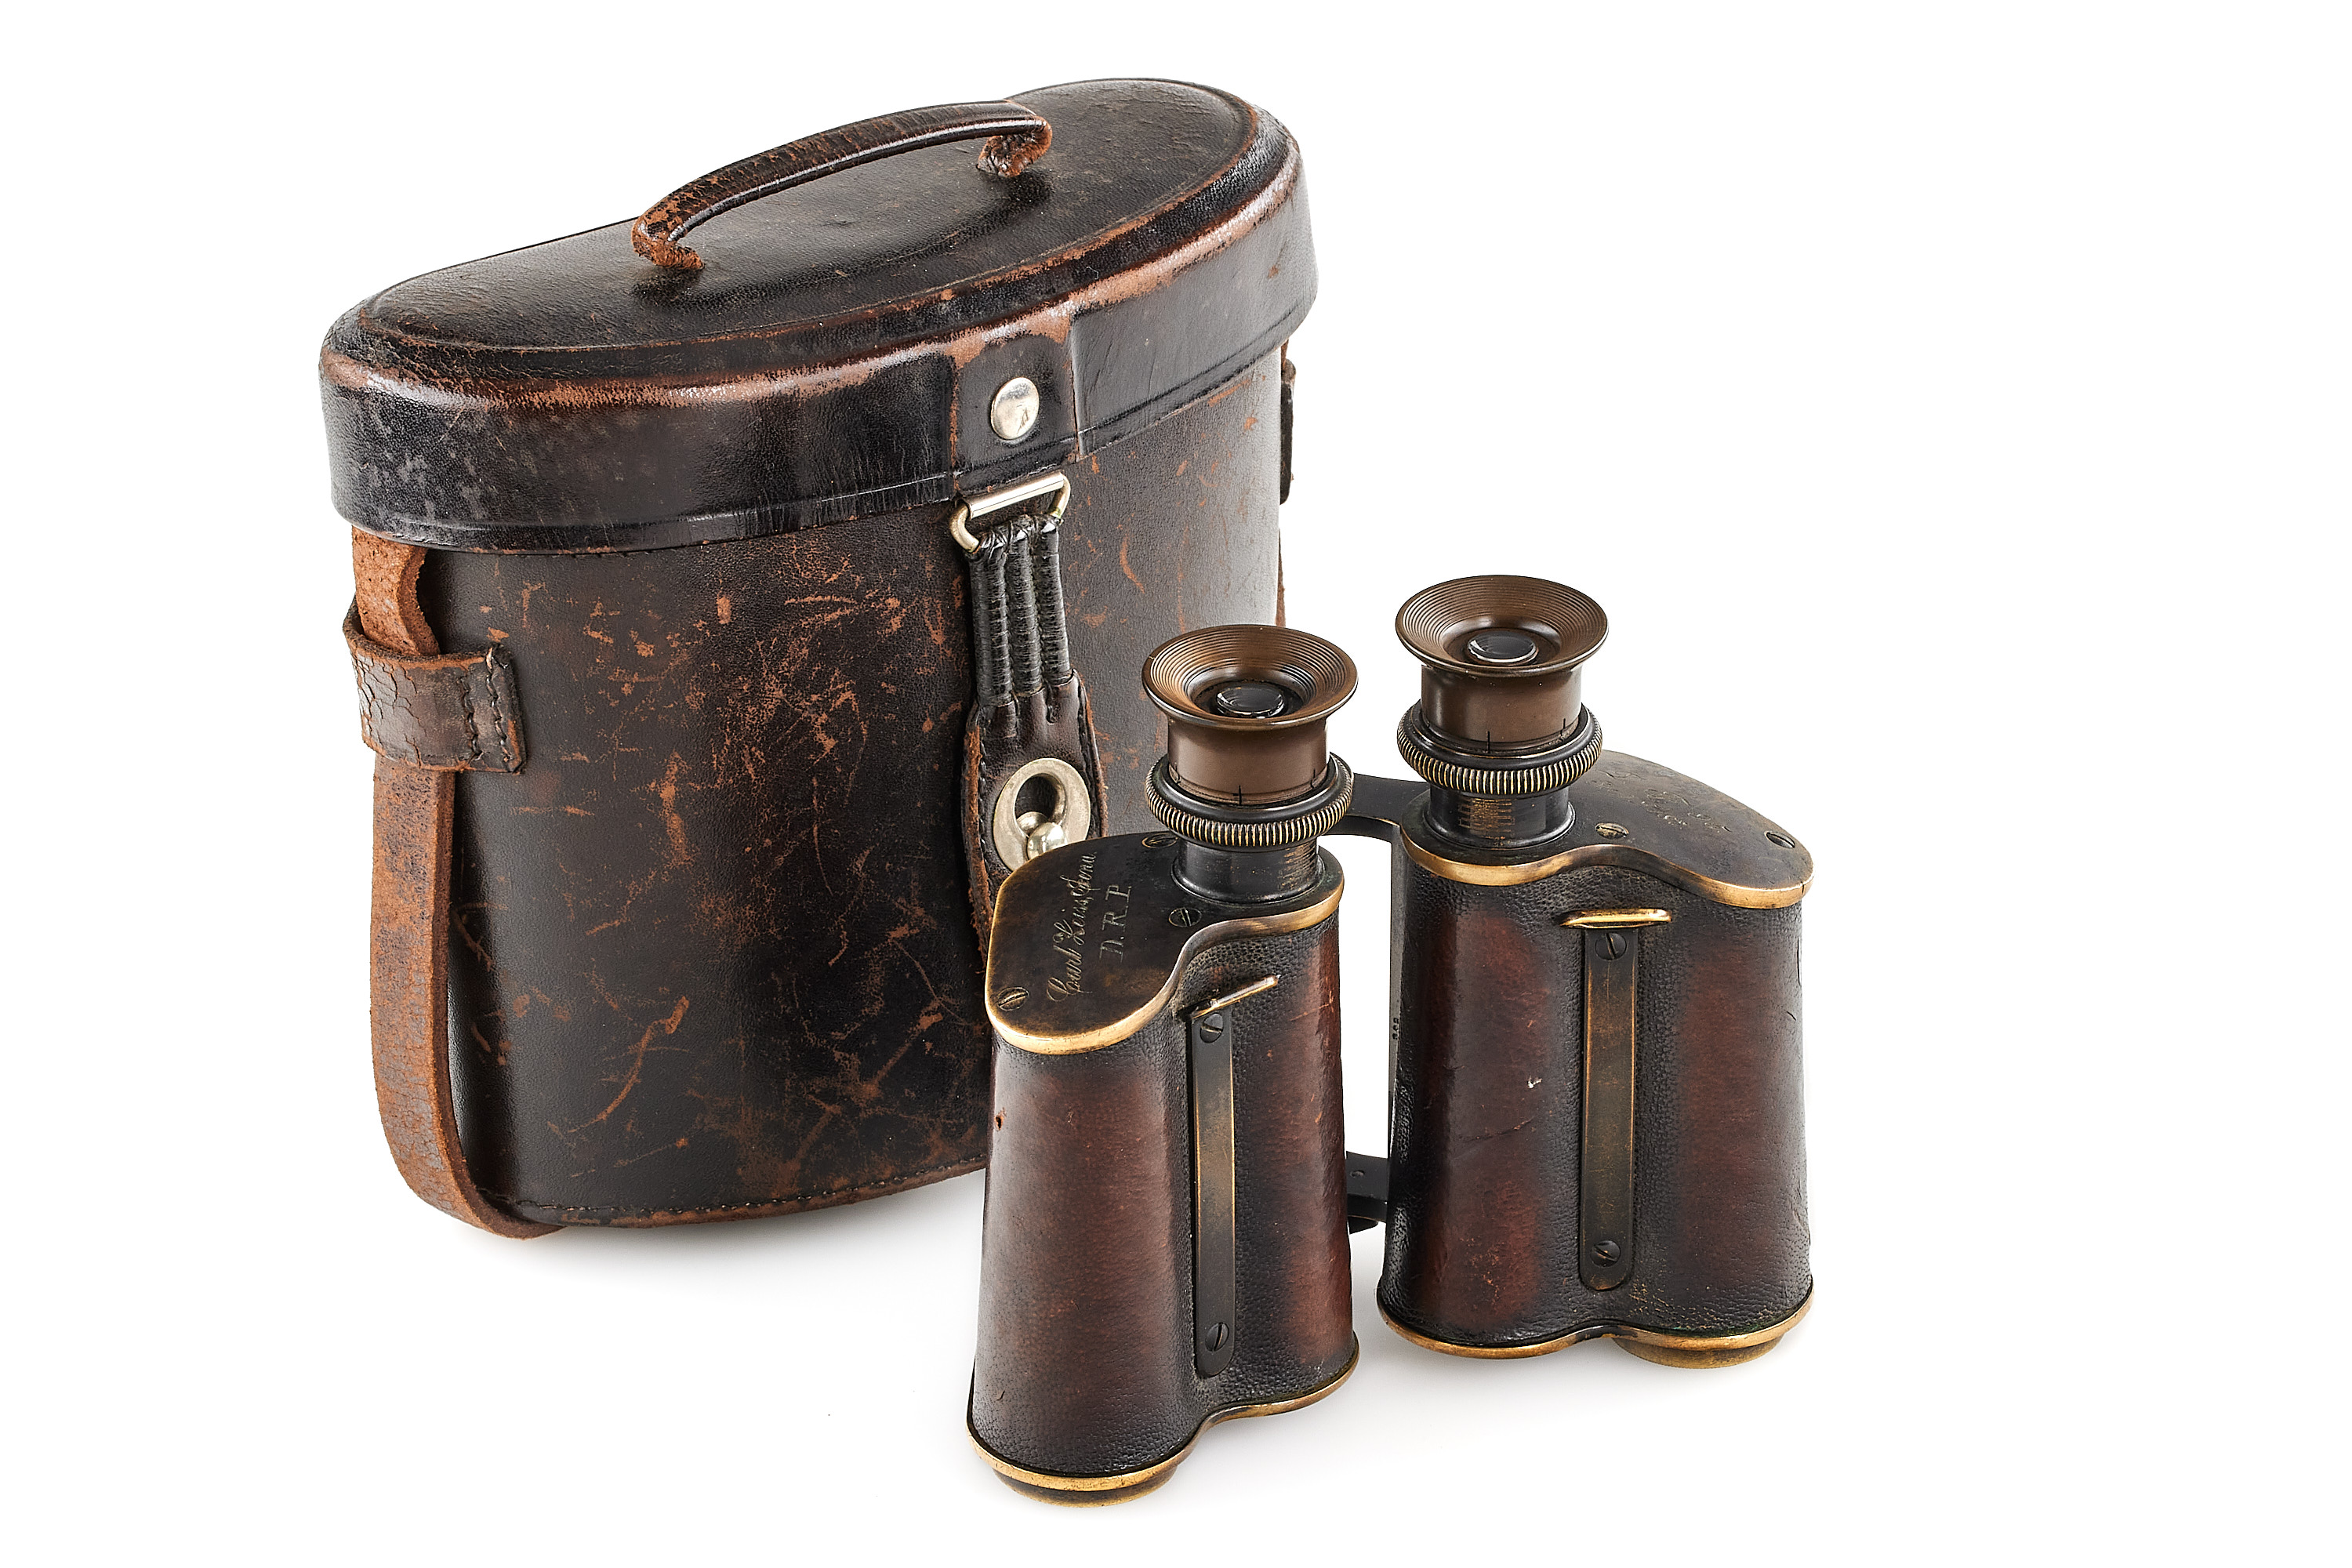 Carl Zeiss military binoculars 'bent shoulders' D.F. 95